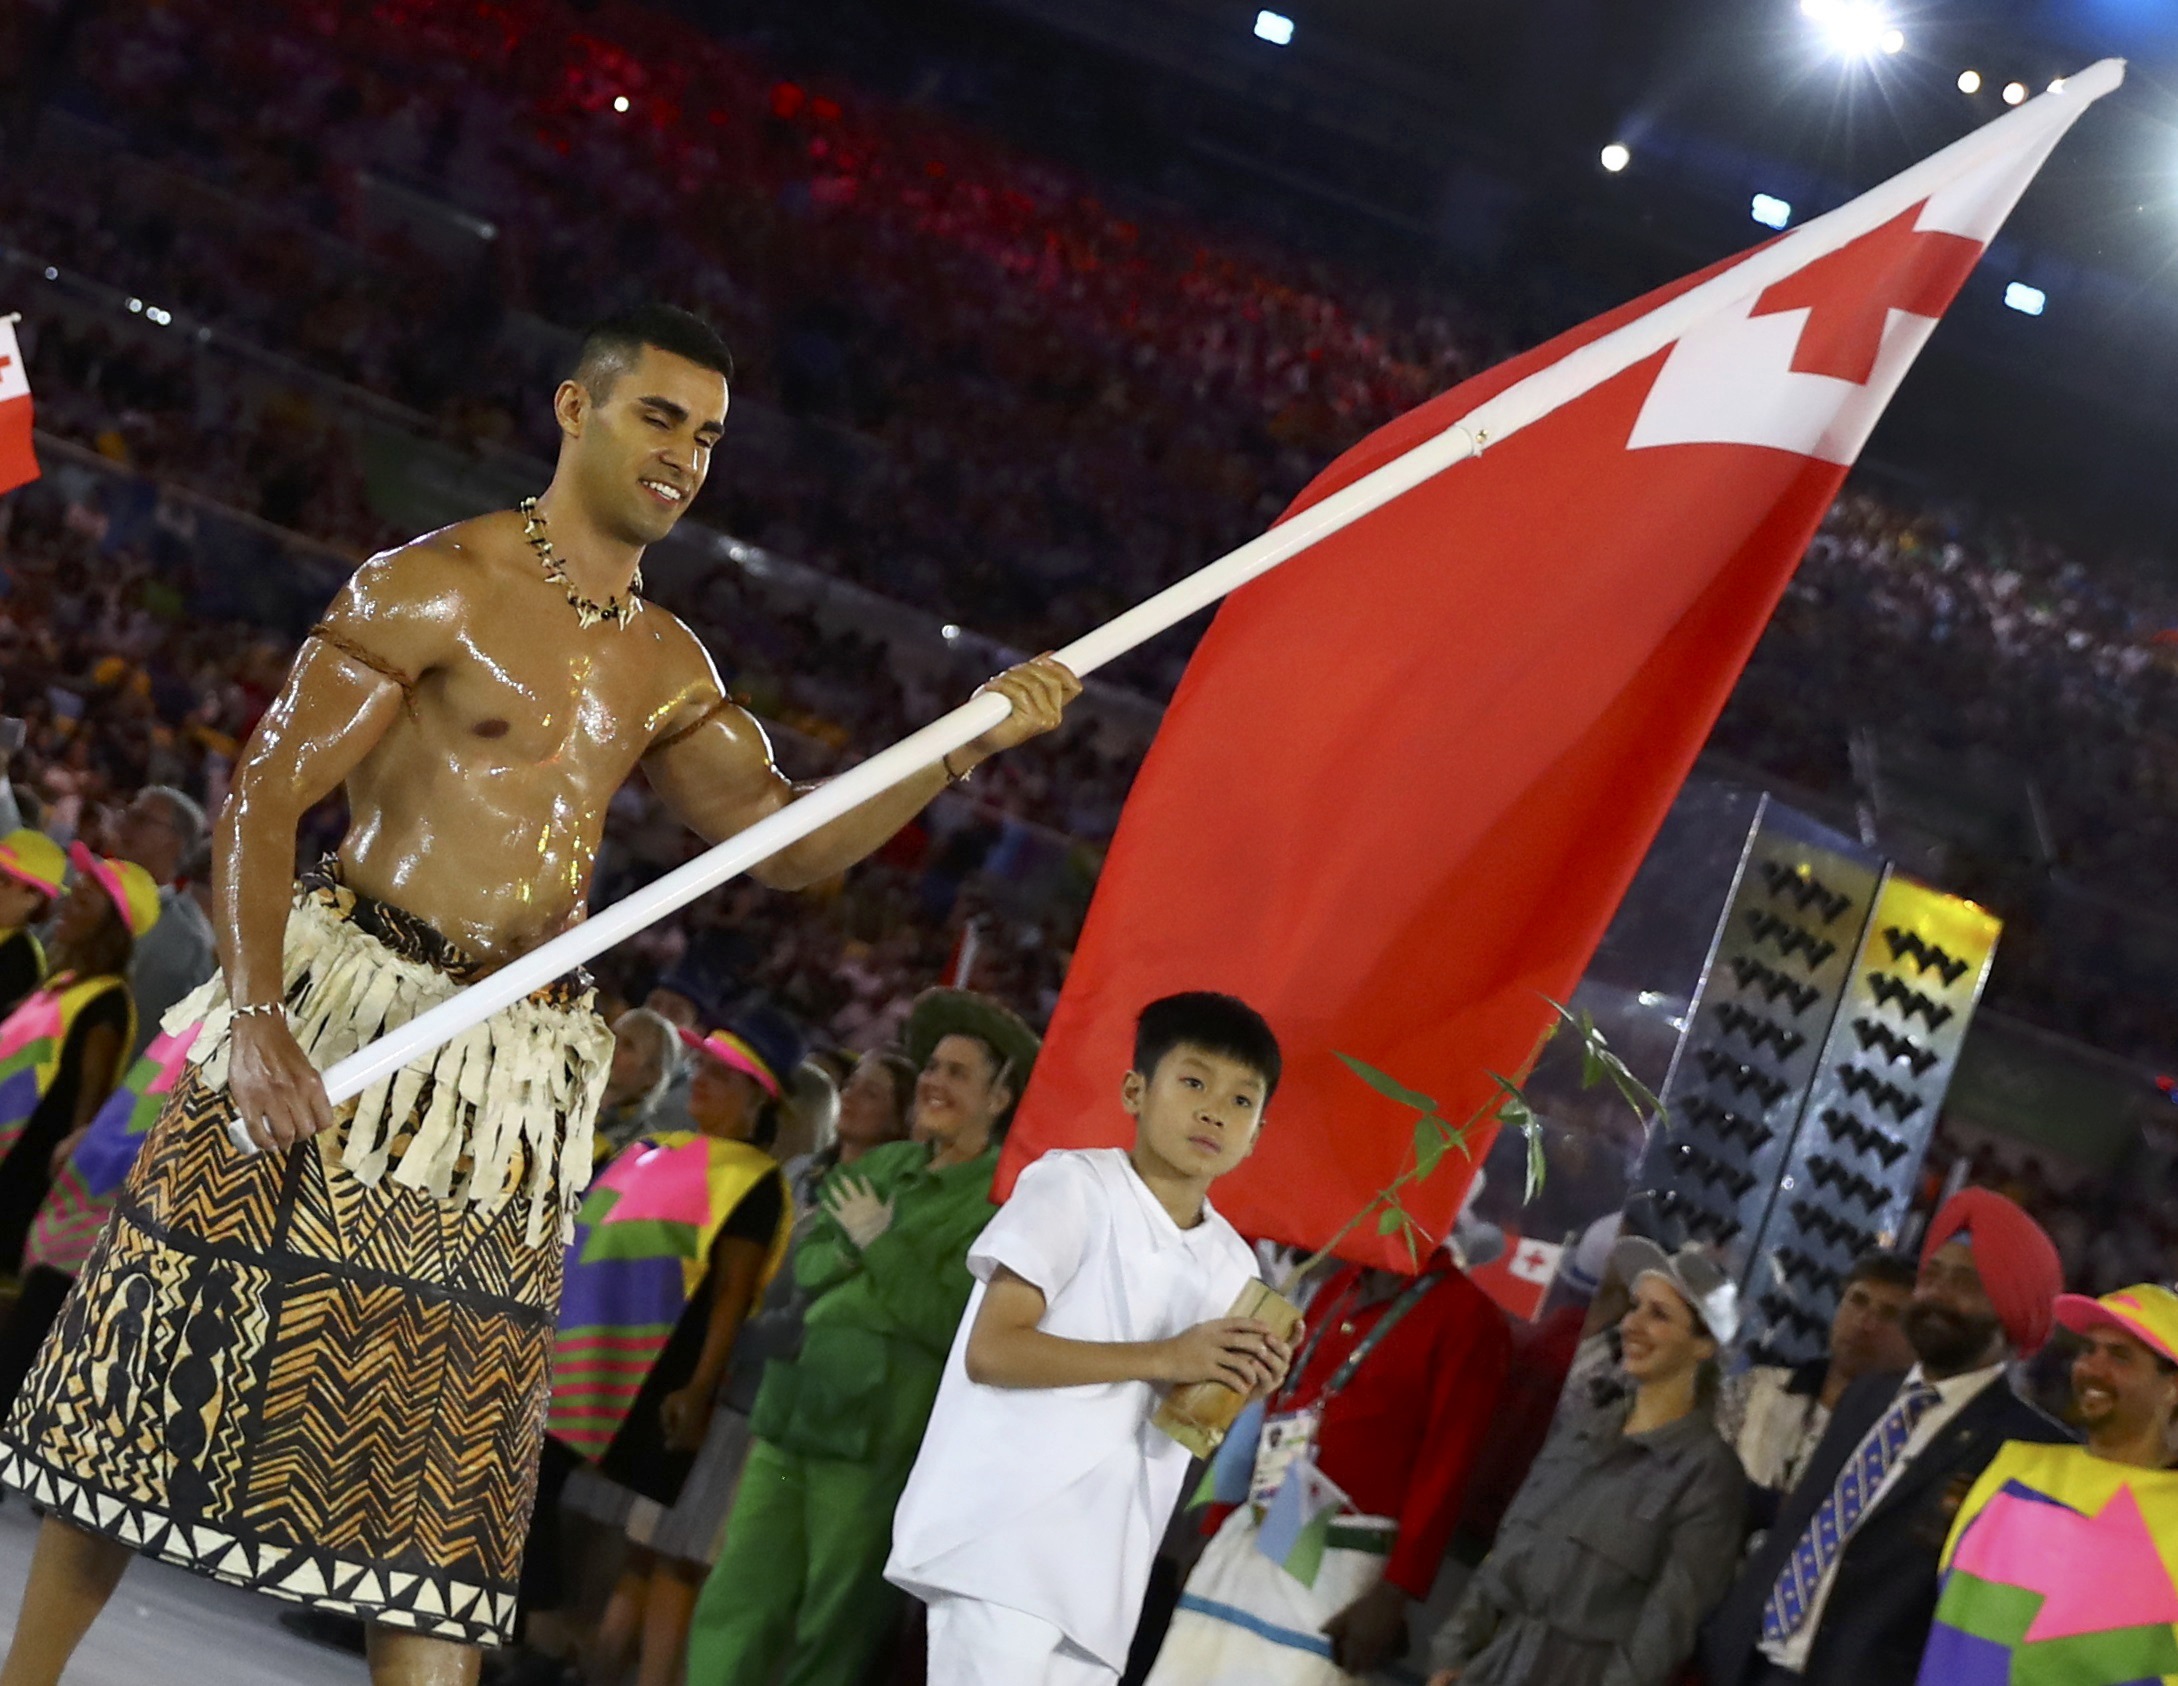 El “aceitado” de Tonga ahora compite en los Juegos Olímpicos de Invierno 2018 (FOTOS y VIDEO)